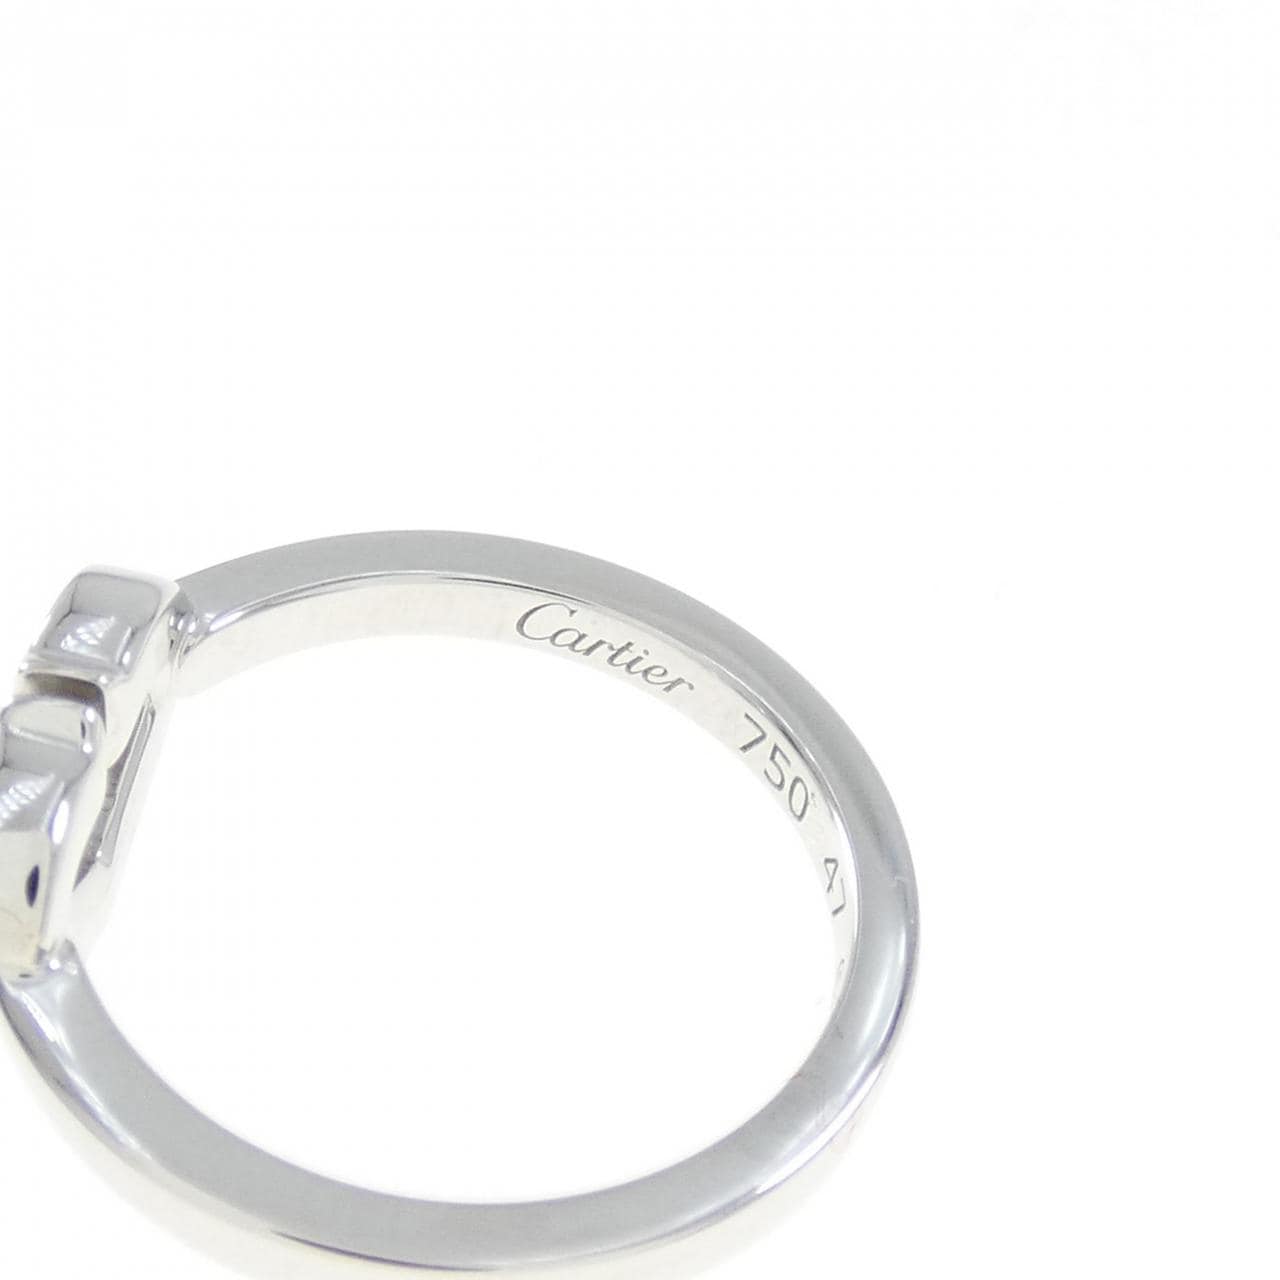 Cartier C heart形戒指